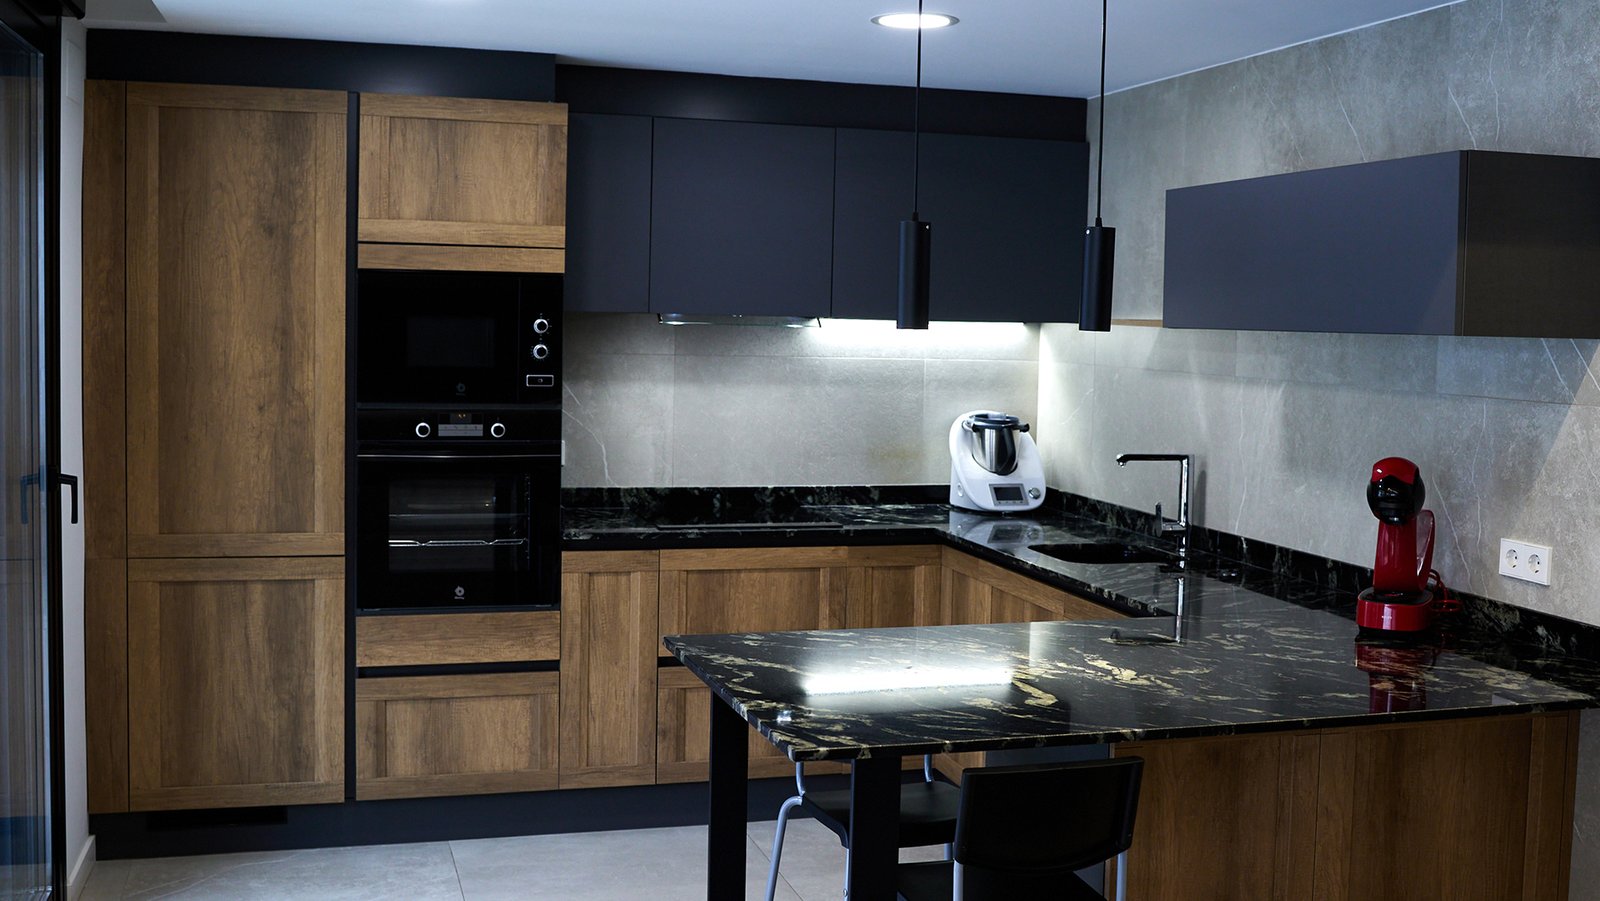 Reforma en cocina, azulejos grises y negros, granito negro en encimera. Electrodomésticos color negro.